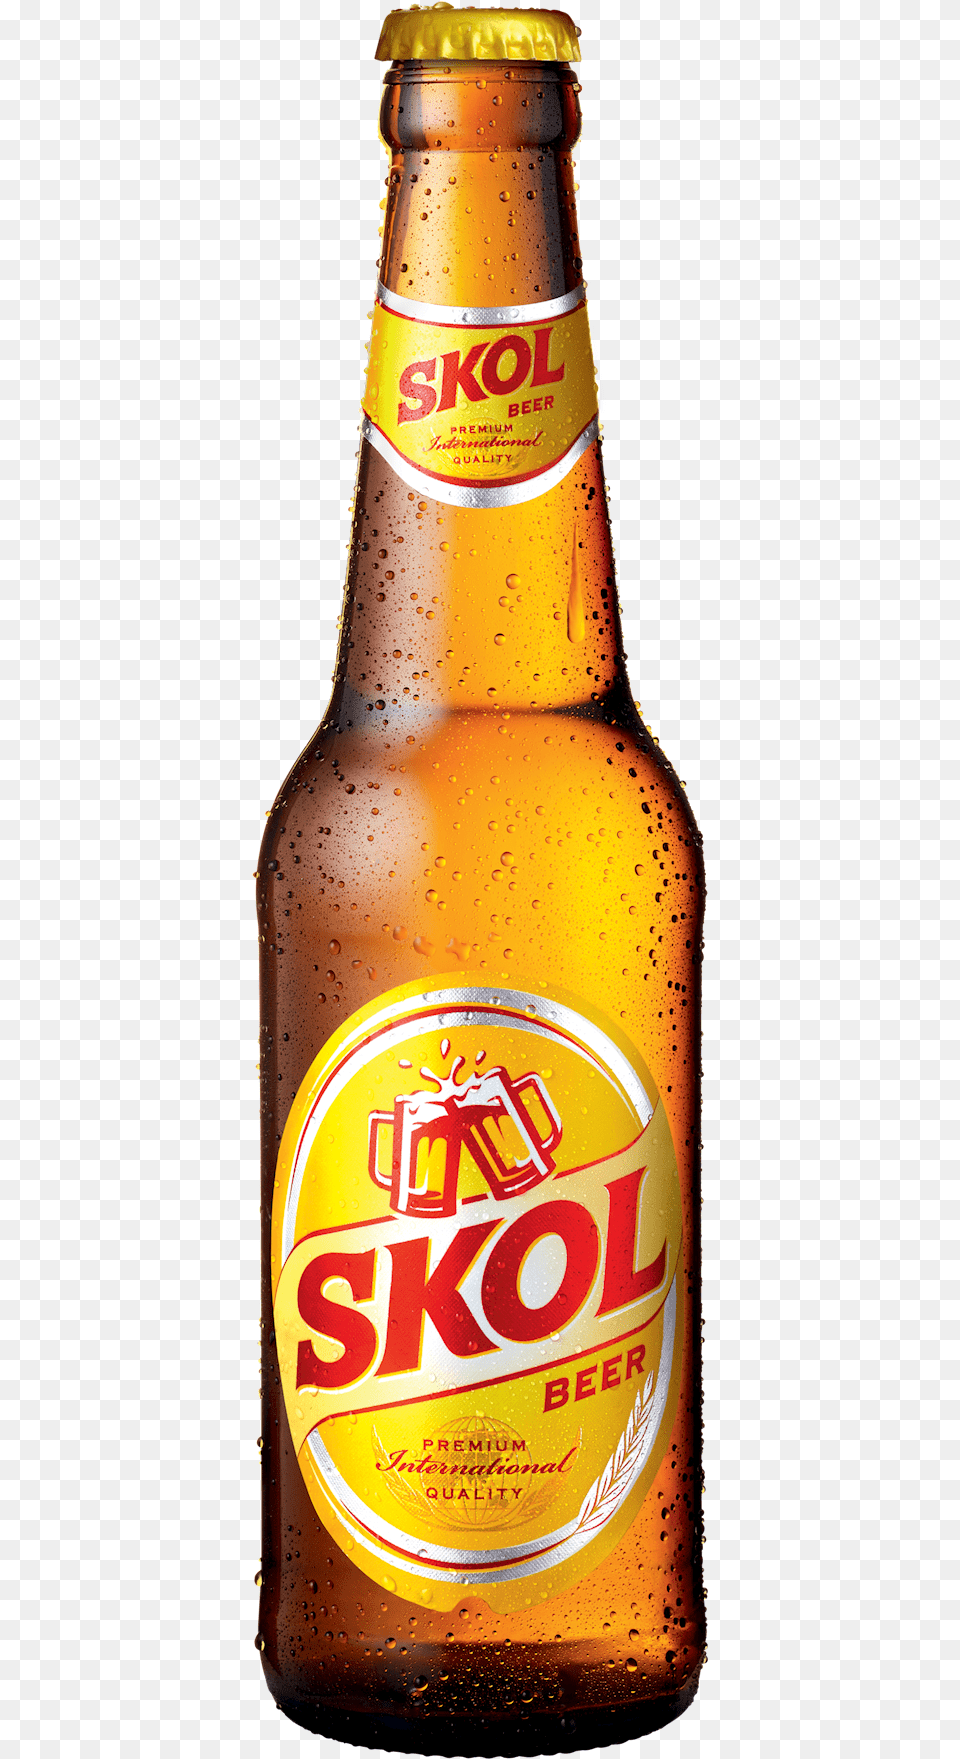 Skol Beer Bottle, Alcohol, Beer Bottle, Beverage, Lager Free Png Download